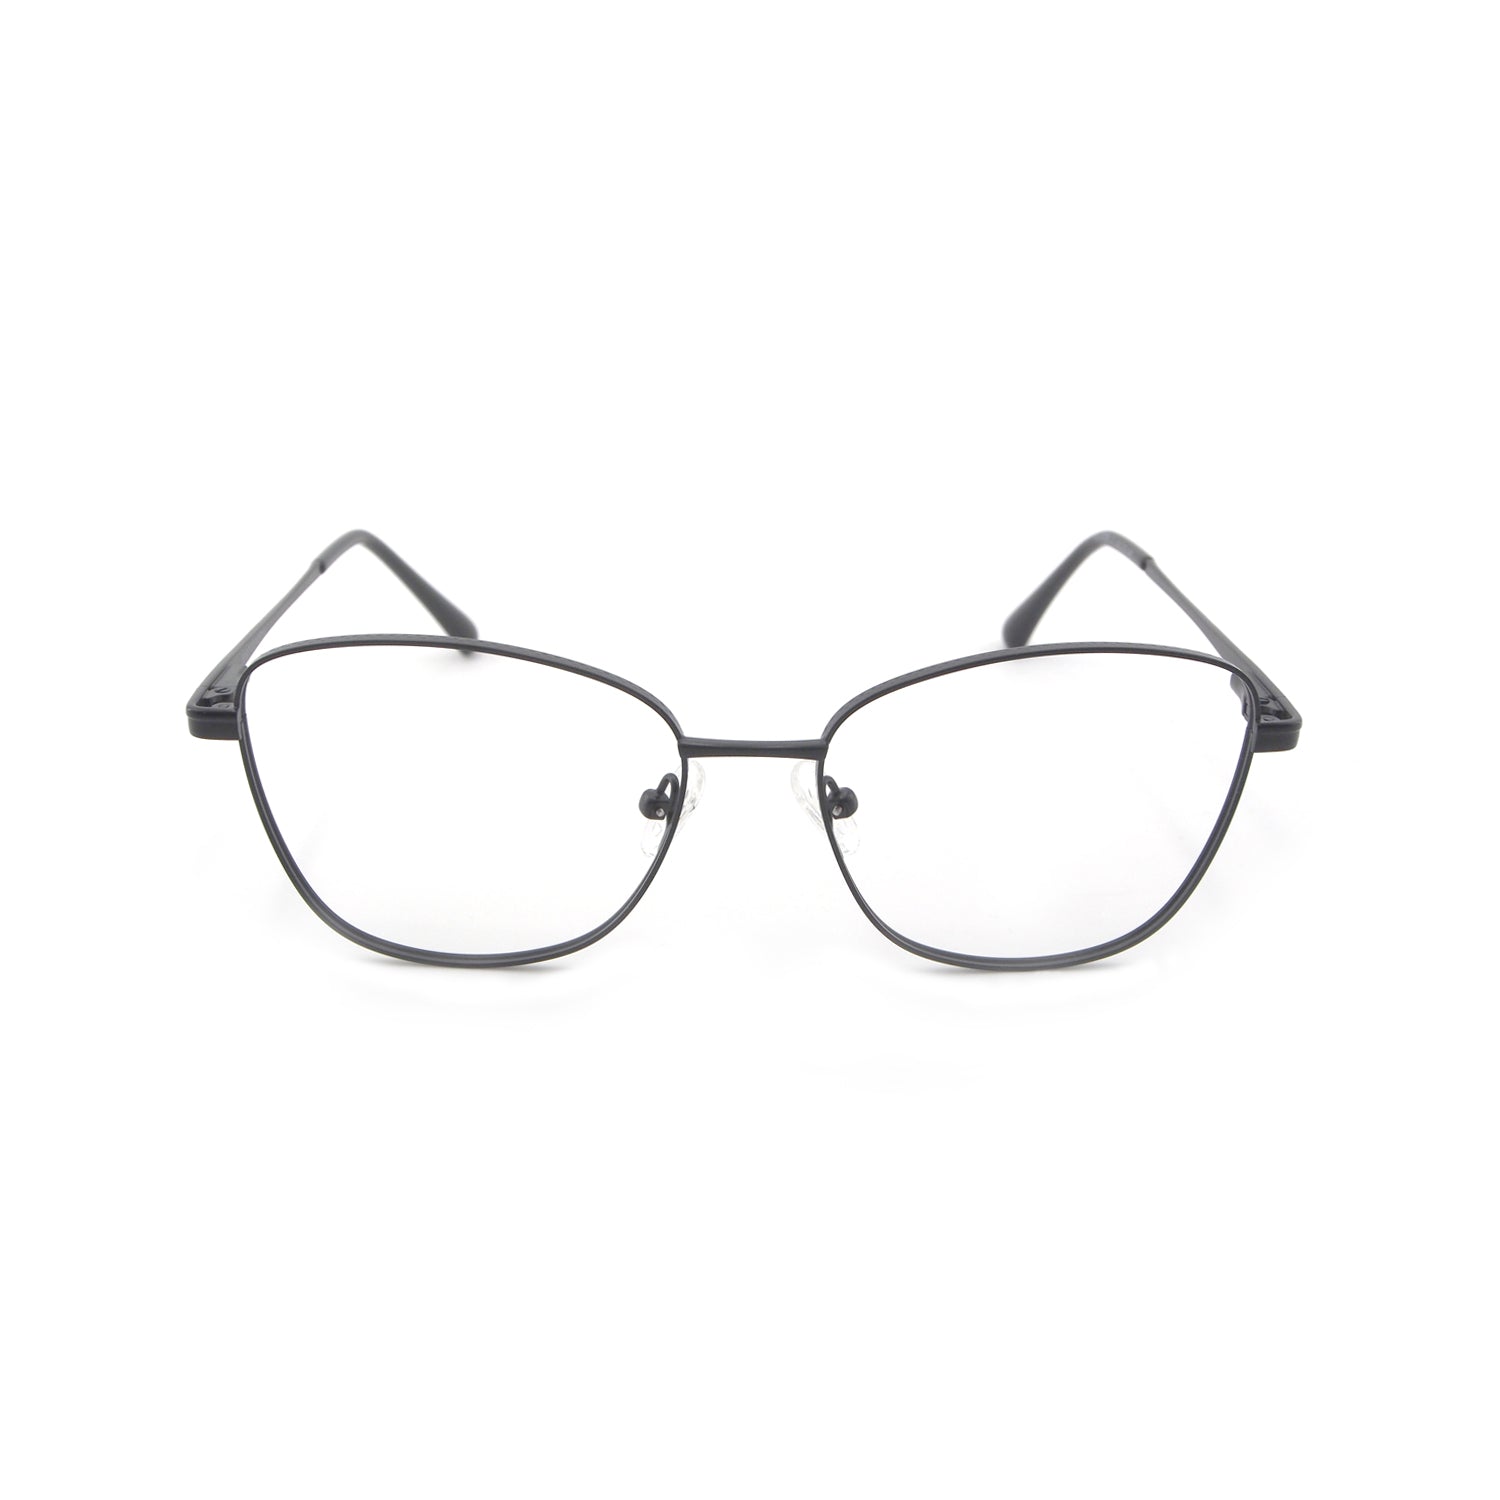 Skylar in Sable Black Eyeglasses - sightonomy